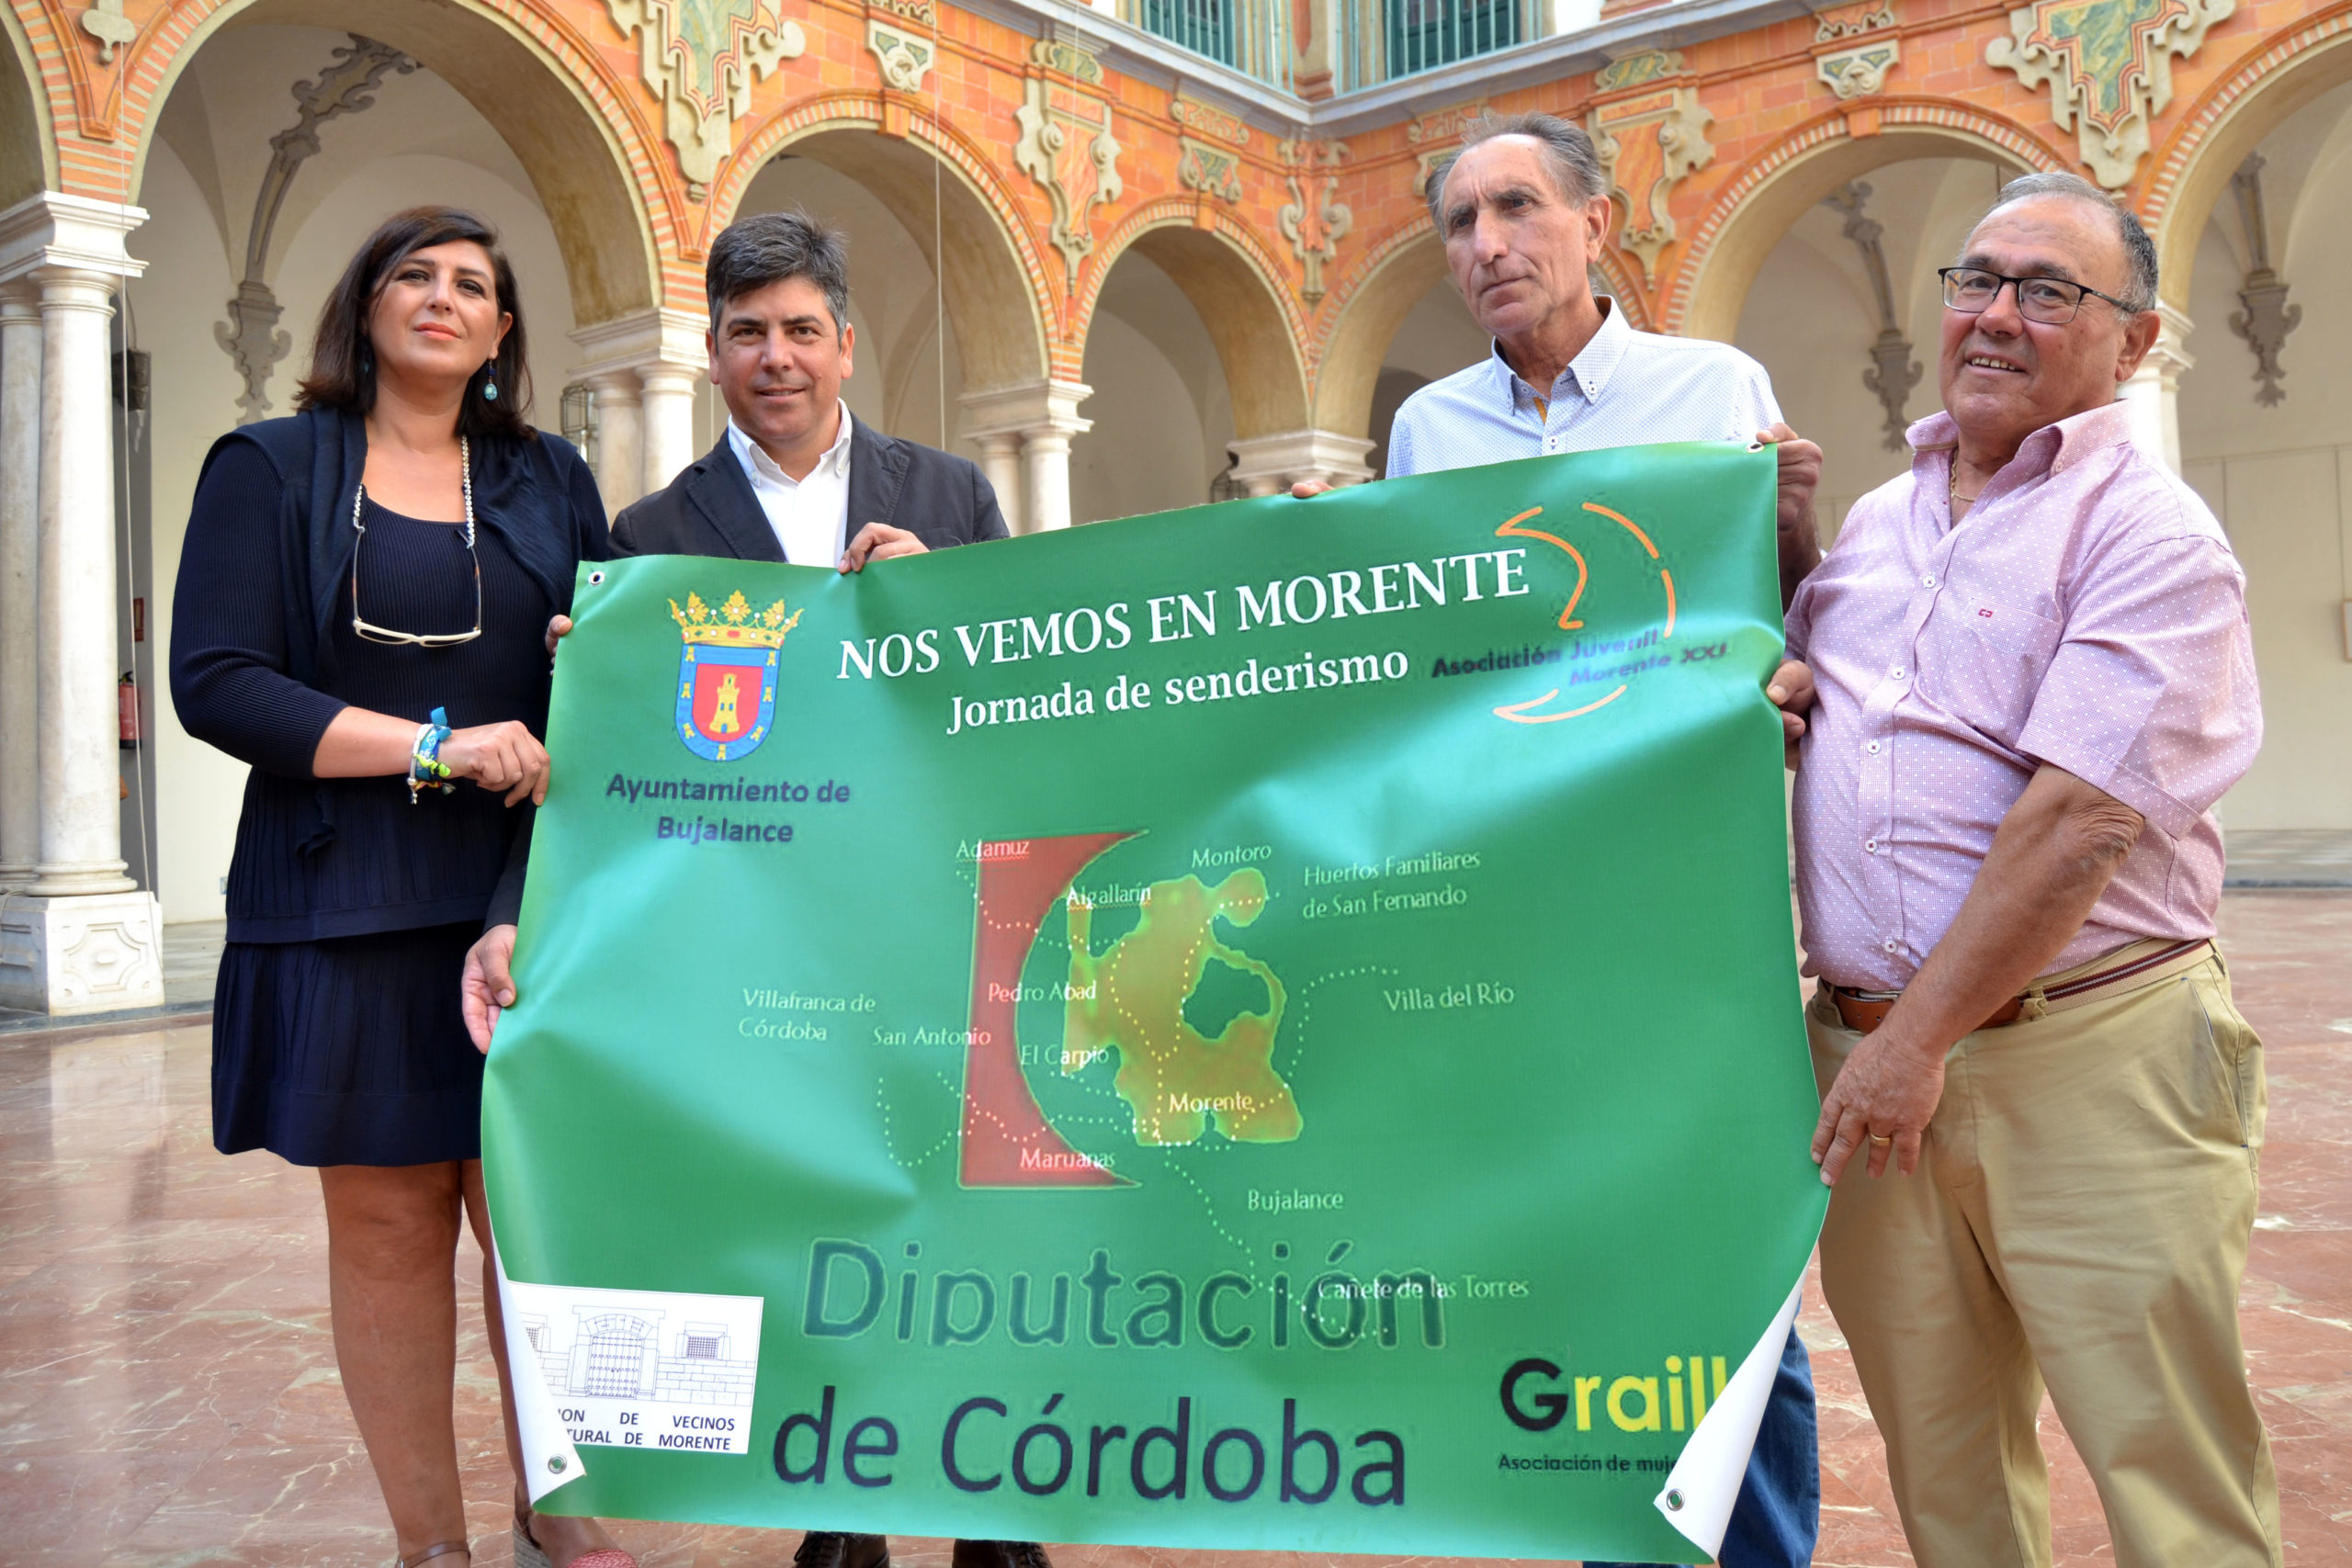 La XII Jornada de senderismo ‘Nos vemos en Morente’ vuelve a congregar a unos 450 senderistas de municipios del Alto Guadalquivir.